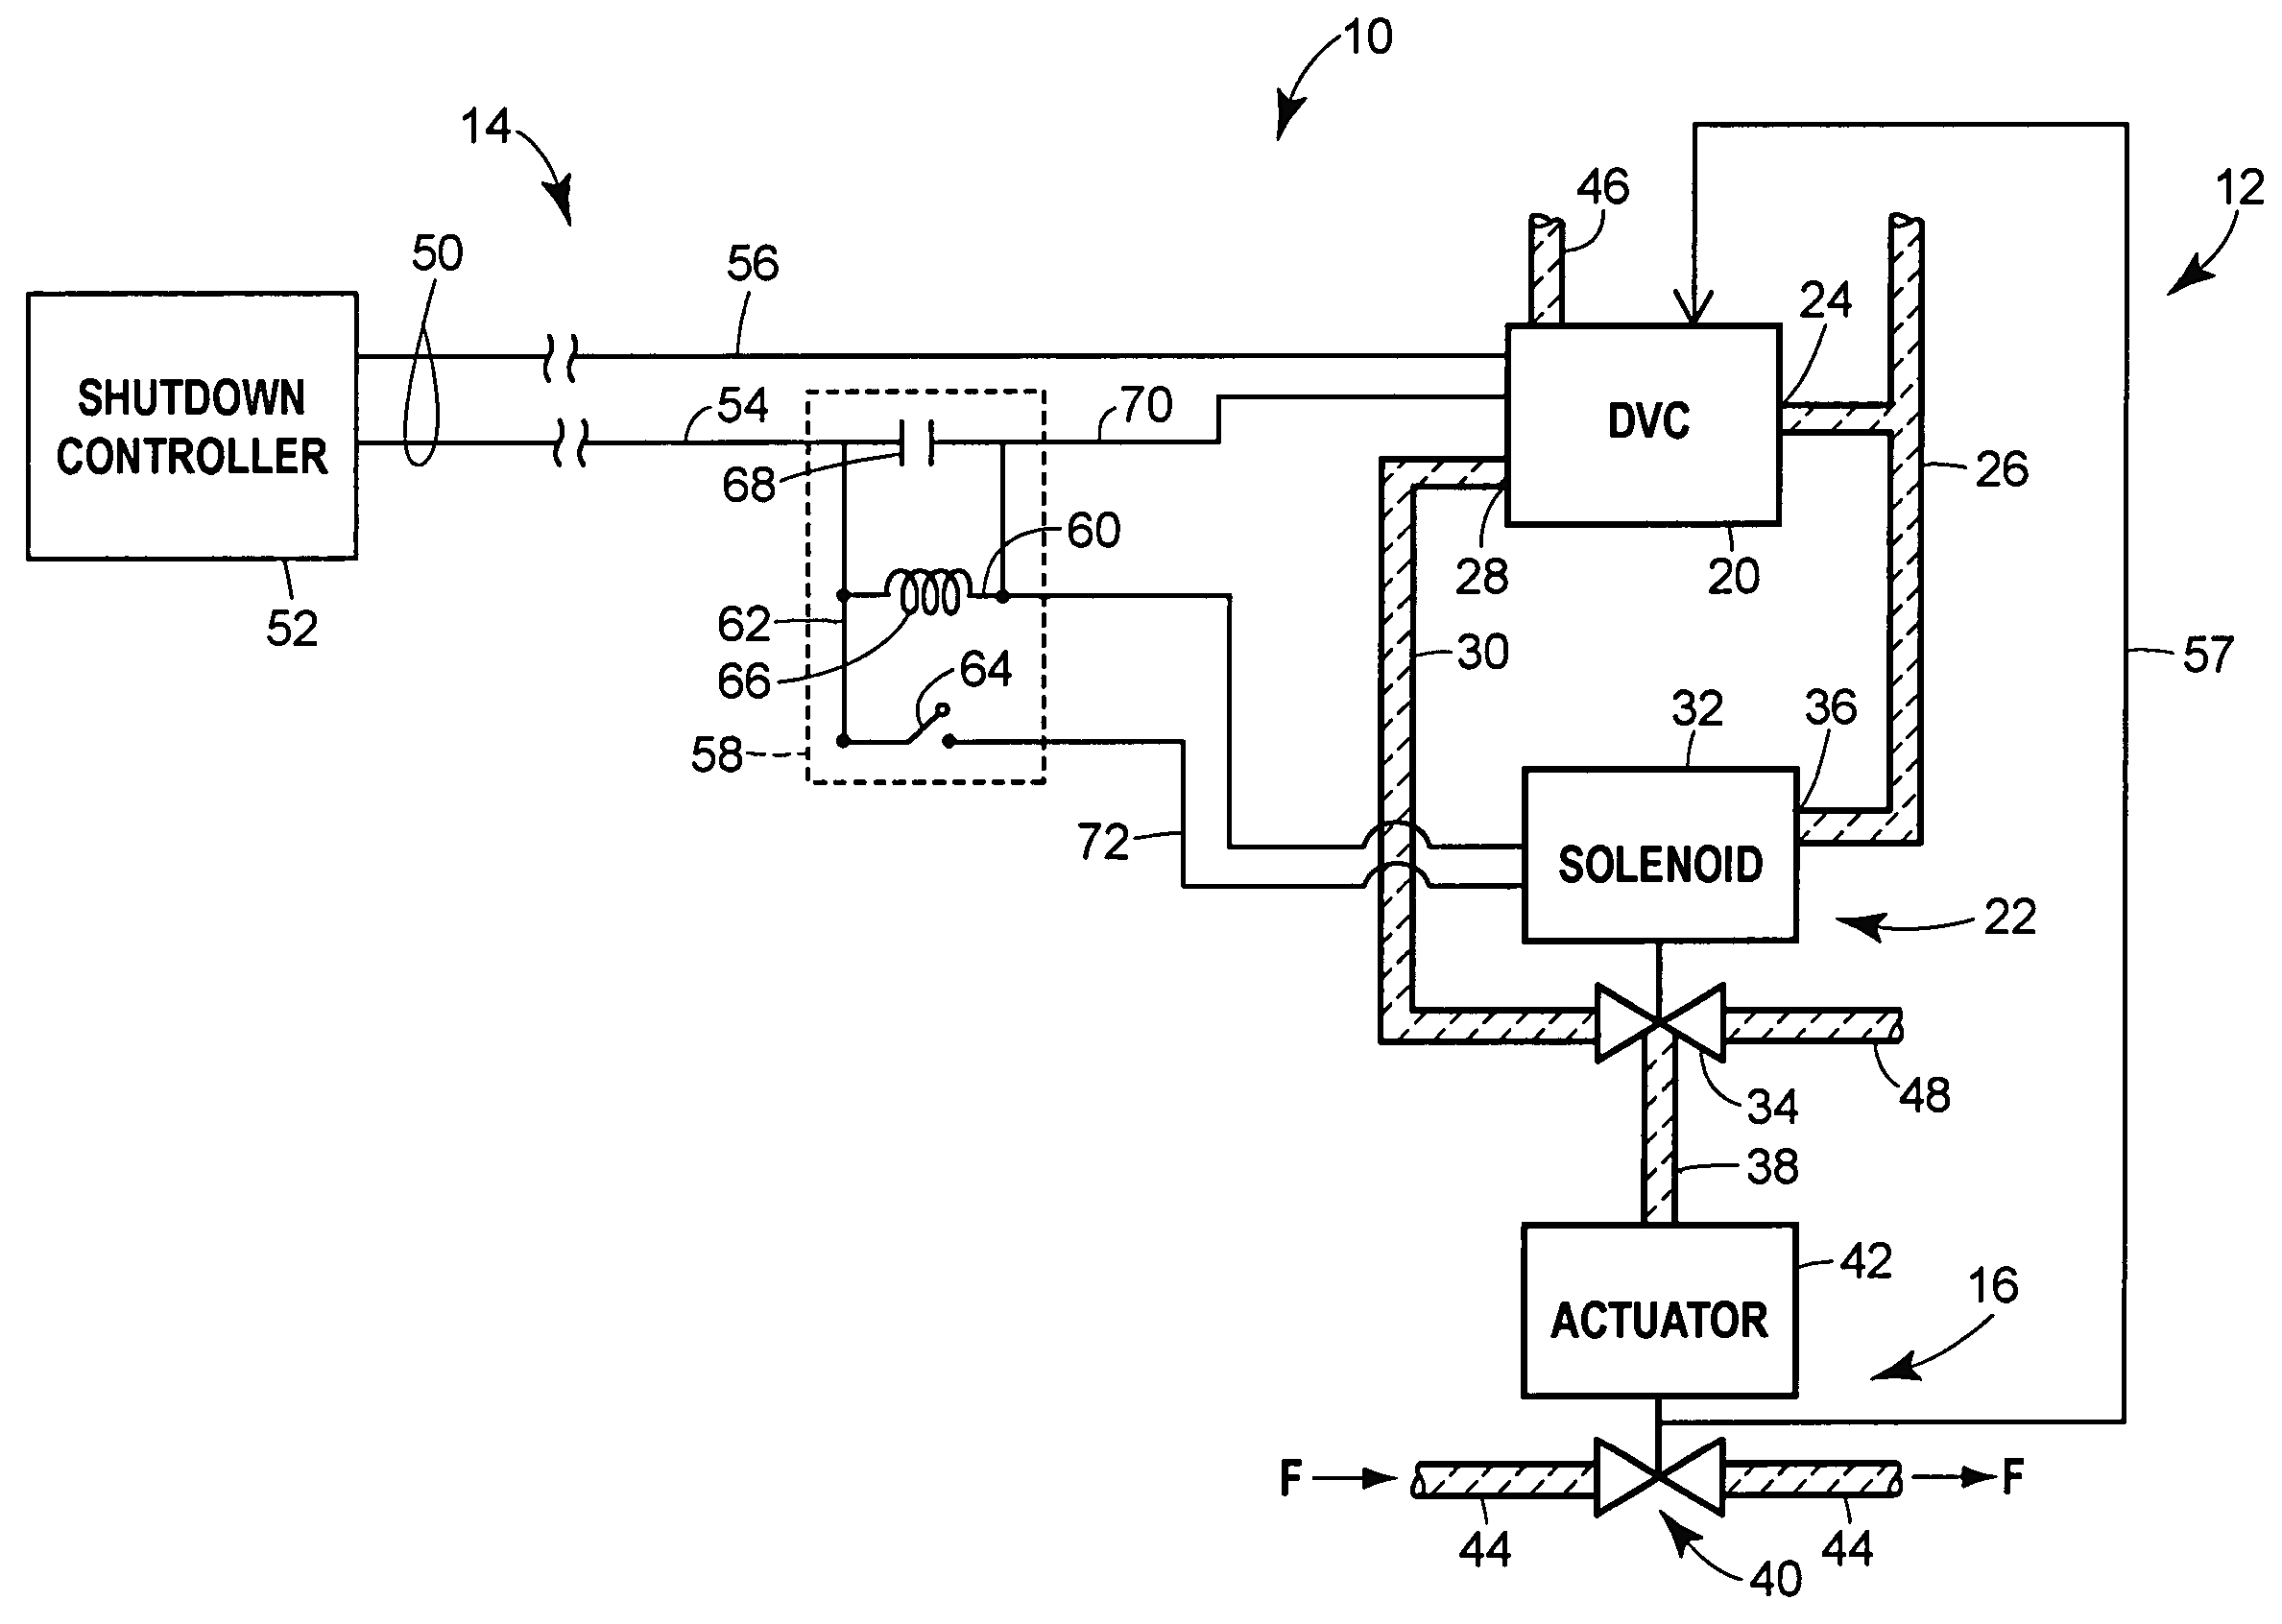 Lowrider Hydraulics Wiring Diagram - Wiring Diagram Library - 12 Volt Hydraulic Pump Wiring Diagram